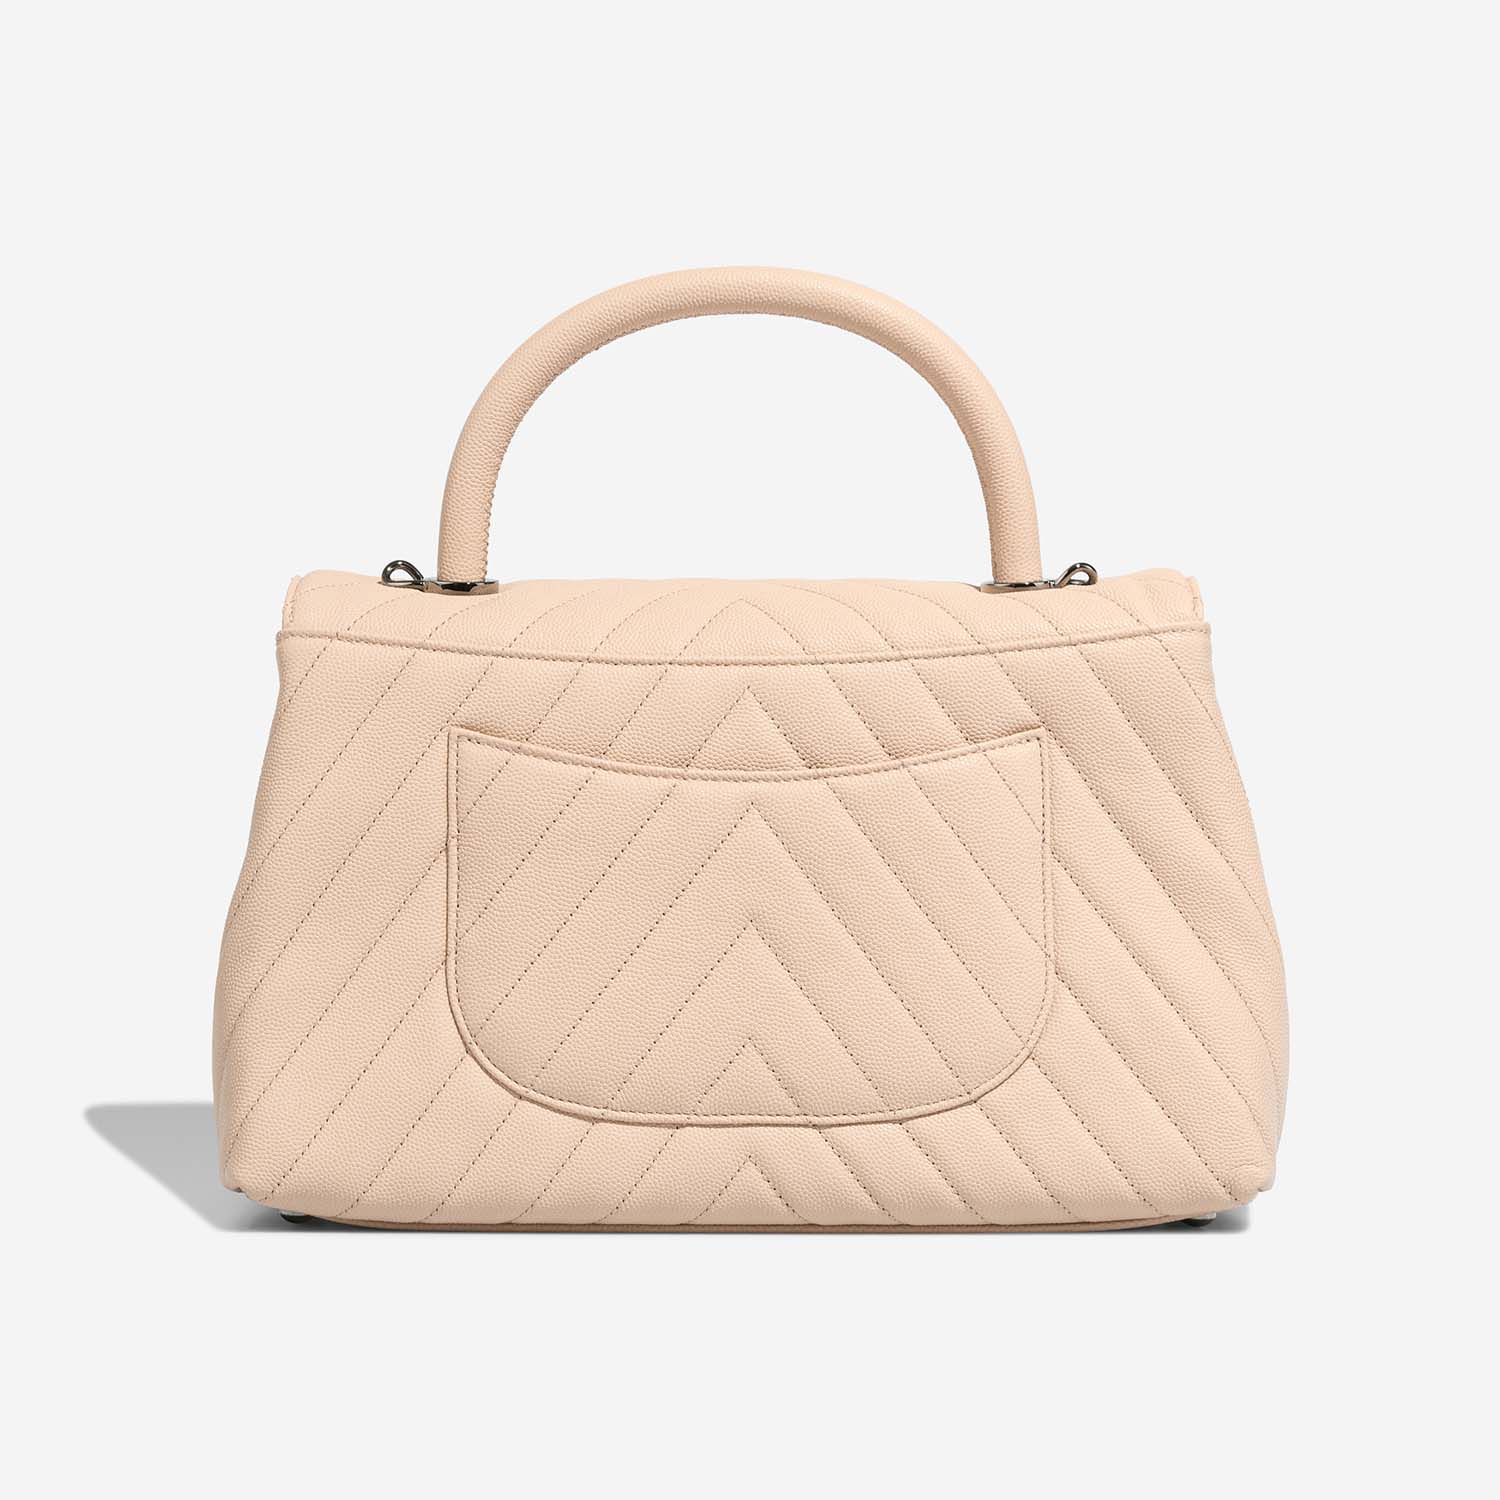 Chanel TimelessHandle Medium Beige Back | Verkaufen Sie Ihre Designer-Tasche auf Saclab.com